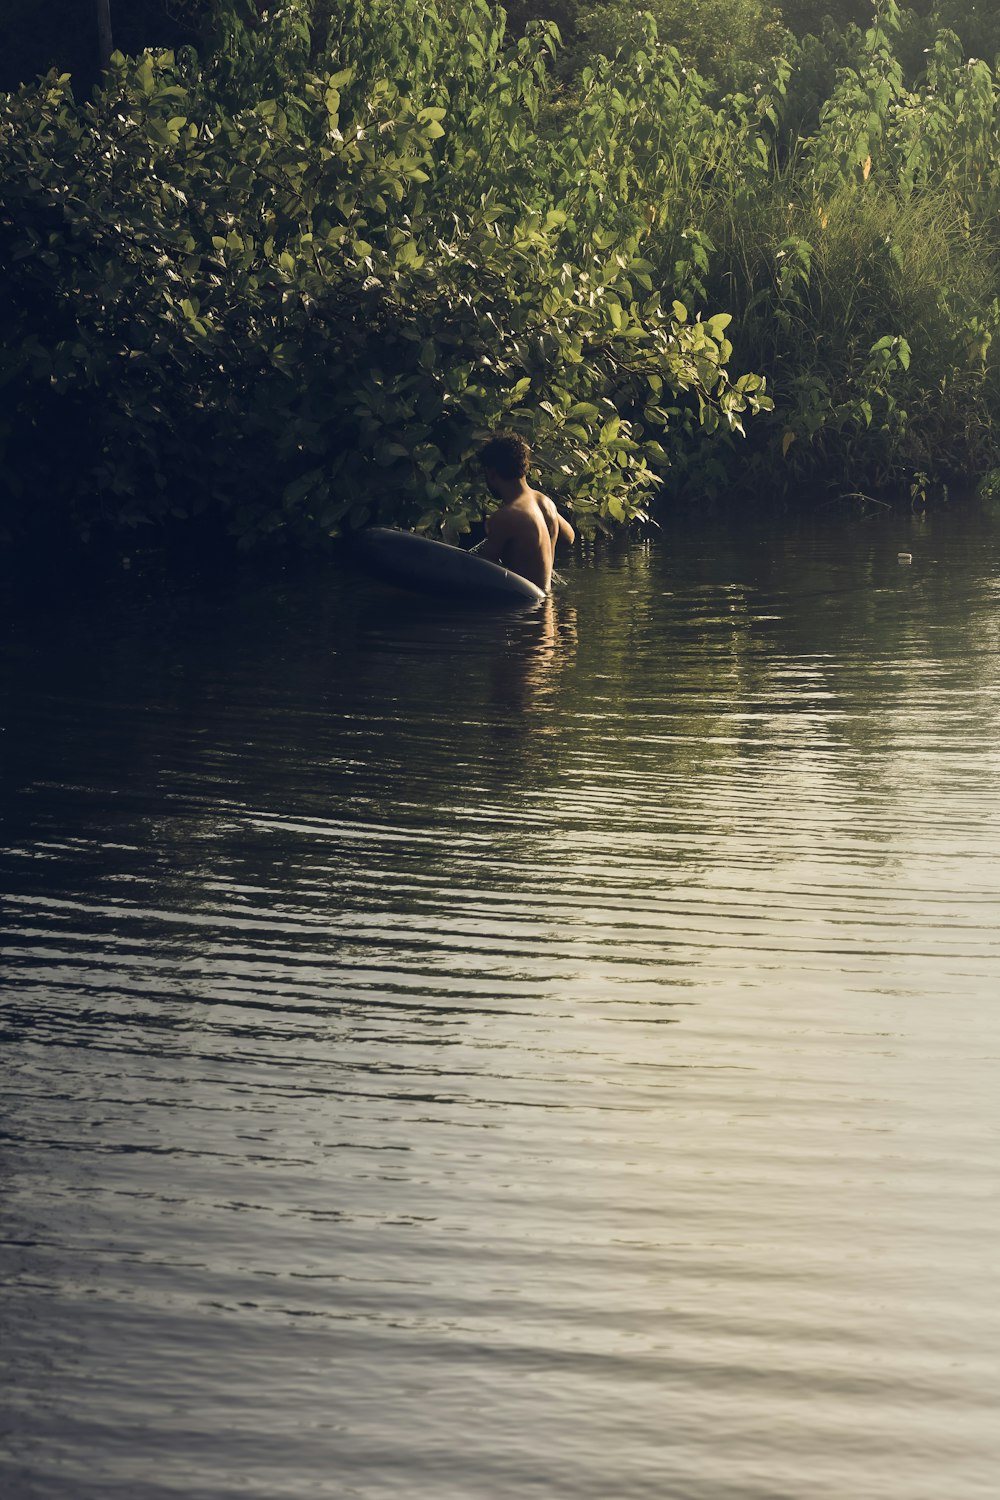 woman in black bikini on body of water during daytime